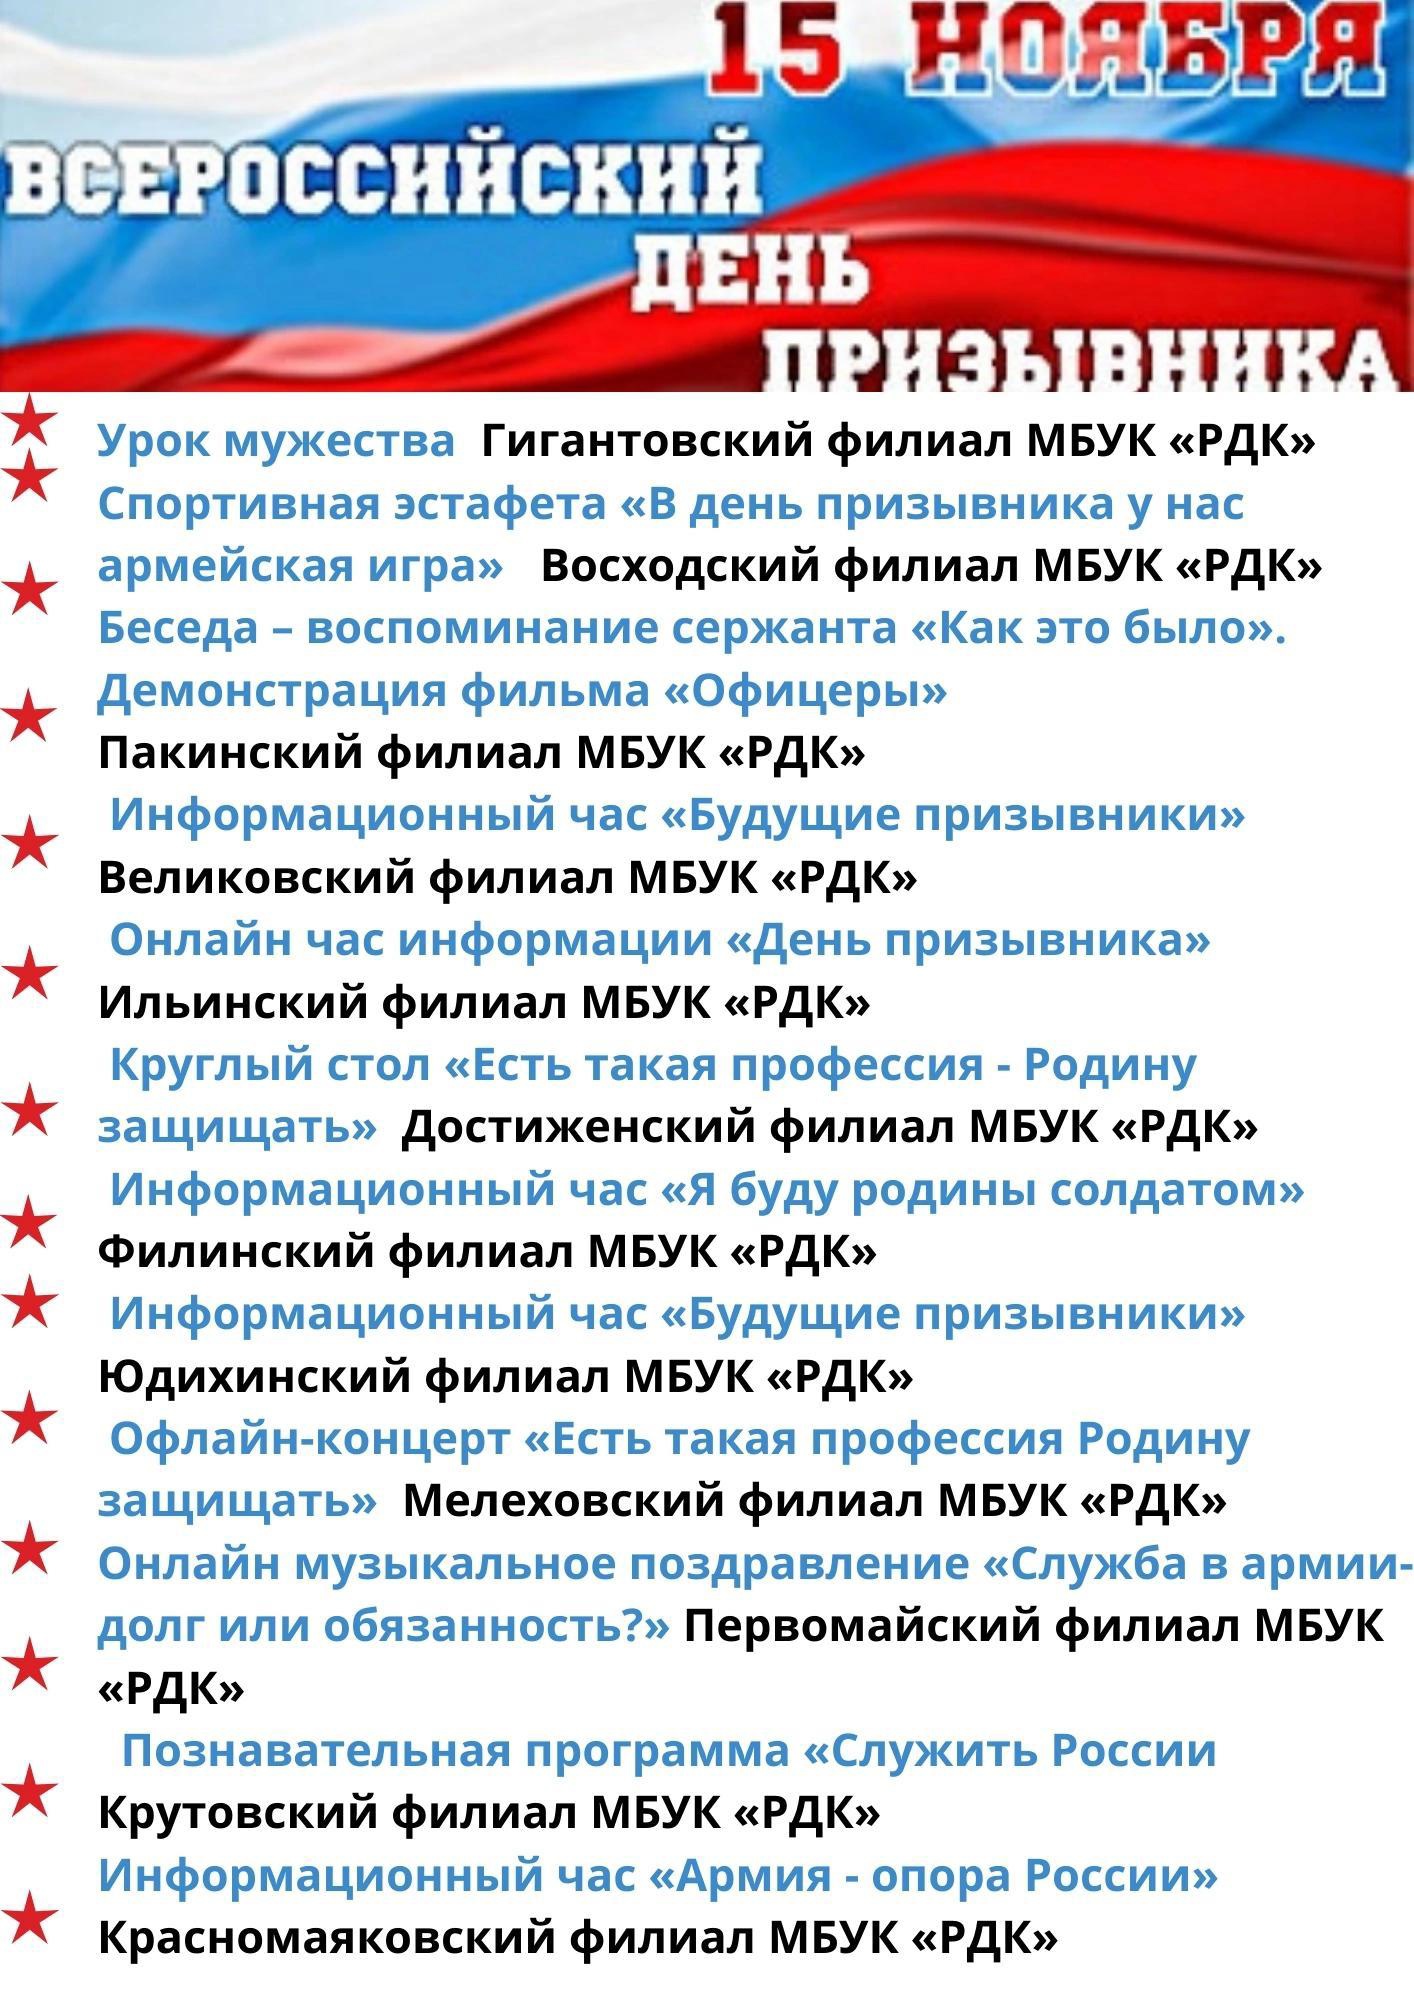 Всероссийский день призывника гиф